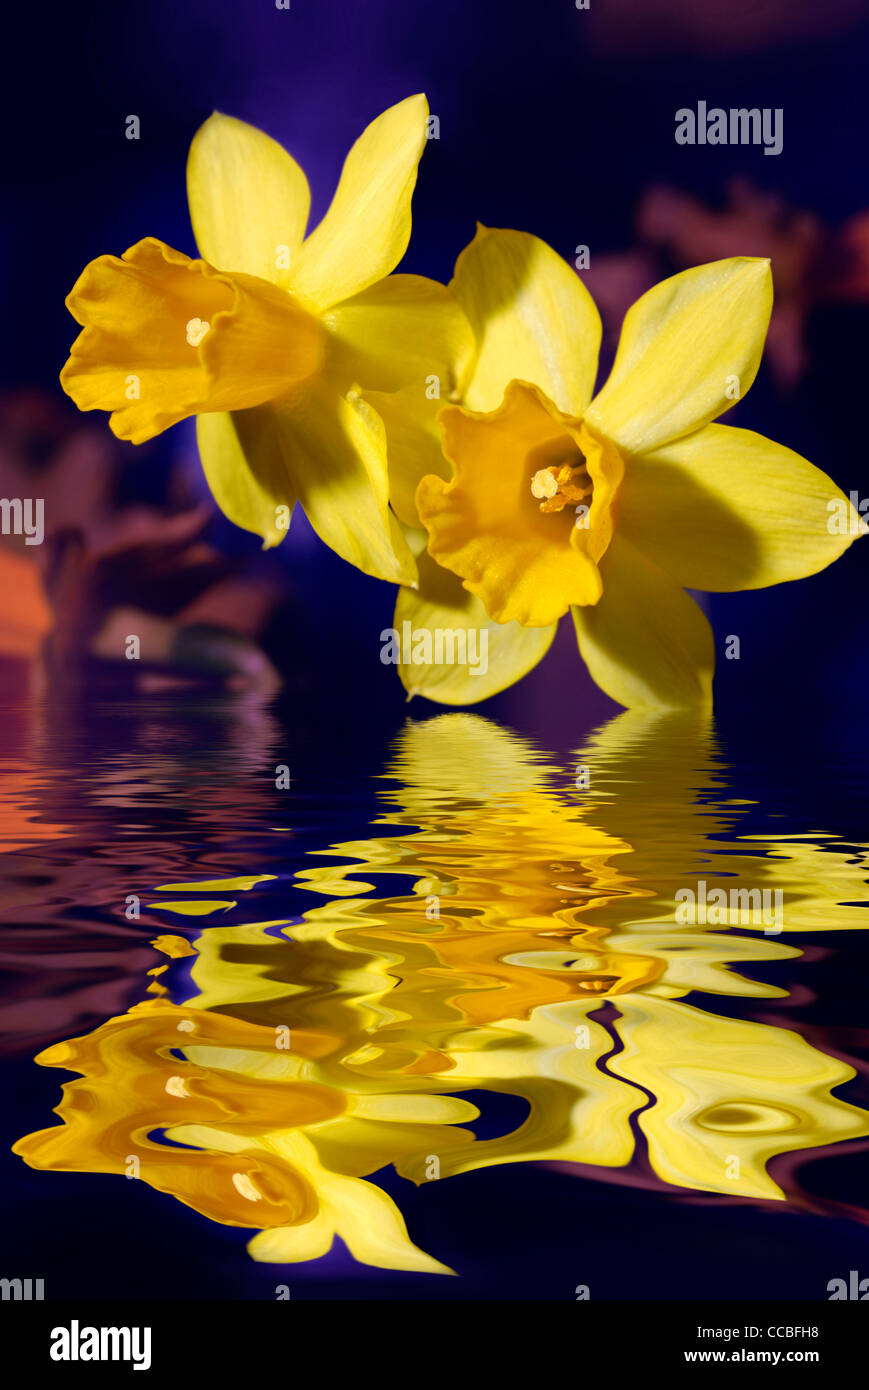 Gros plan du jaune jonquille ou narcisse fleurs de toucher l'eau bleue Banque D'Images